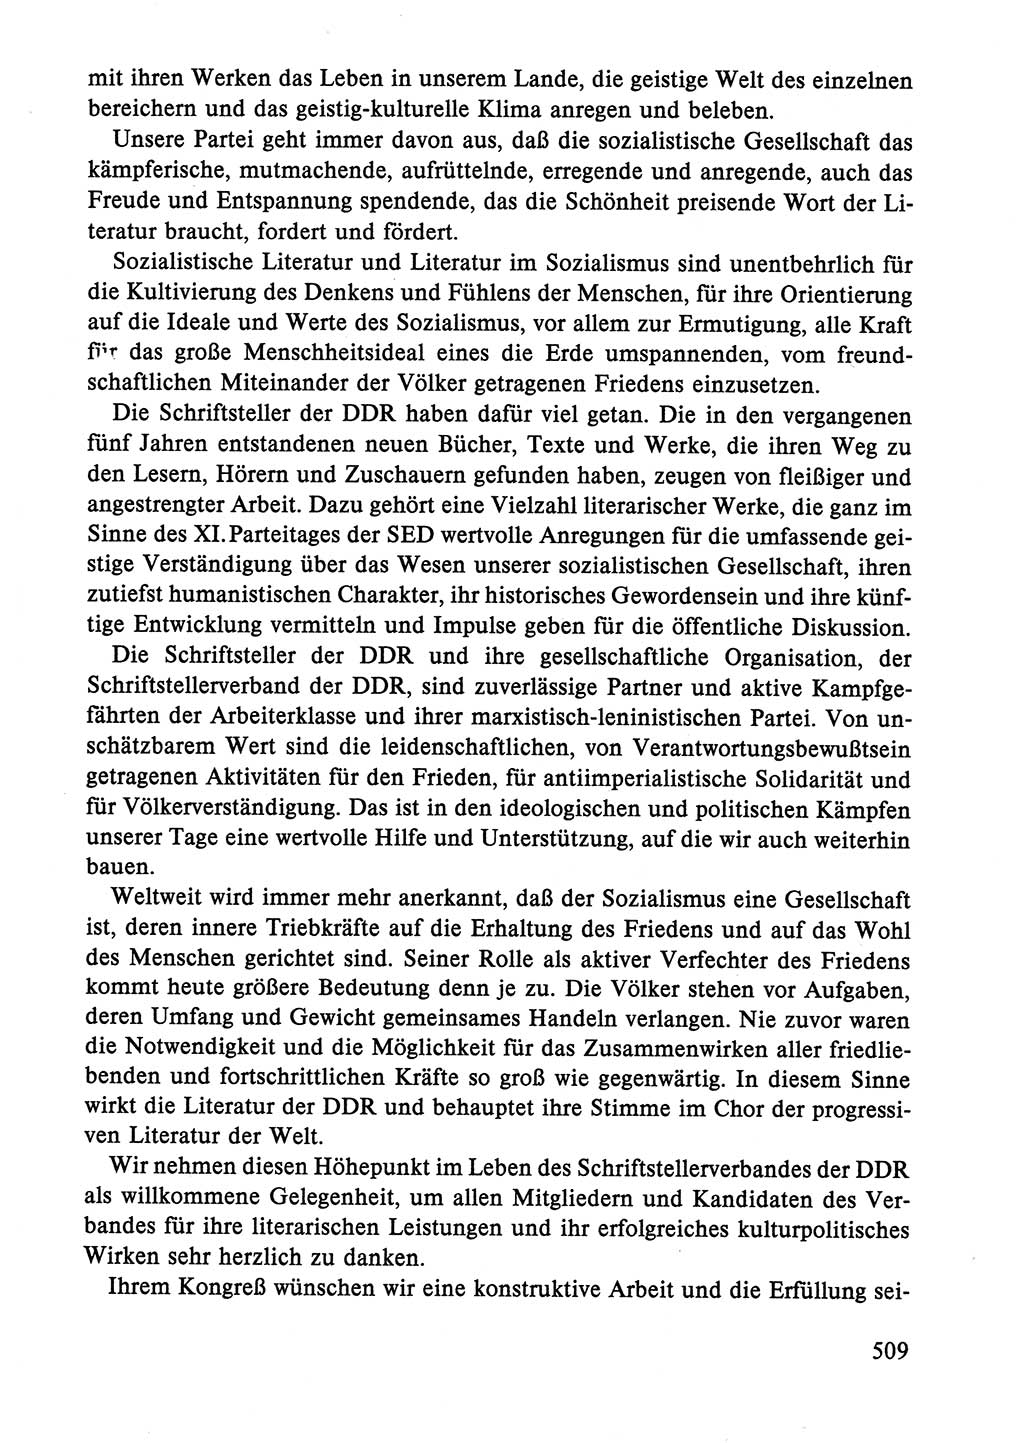 Dokumente der Sozialistischen Einheitspartei Deutschlands (SED) [Deutsche Demokratische Republik (DDR)] 1986-1987, Seite 509 (Dok. SED DDR 1986-1987, S. 509)